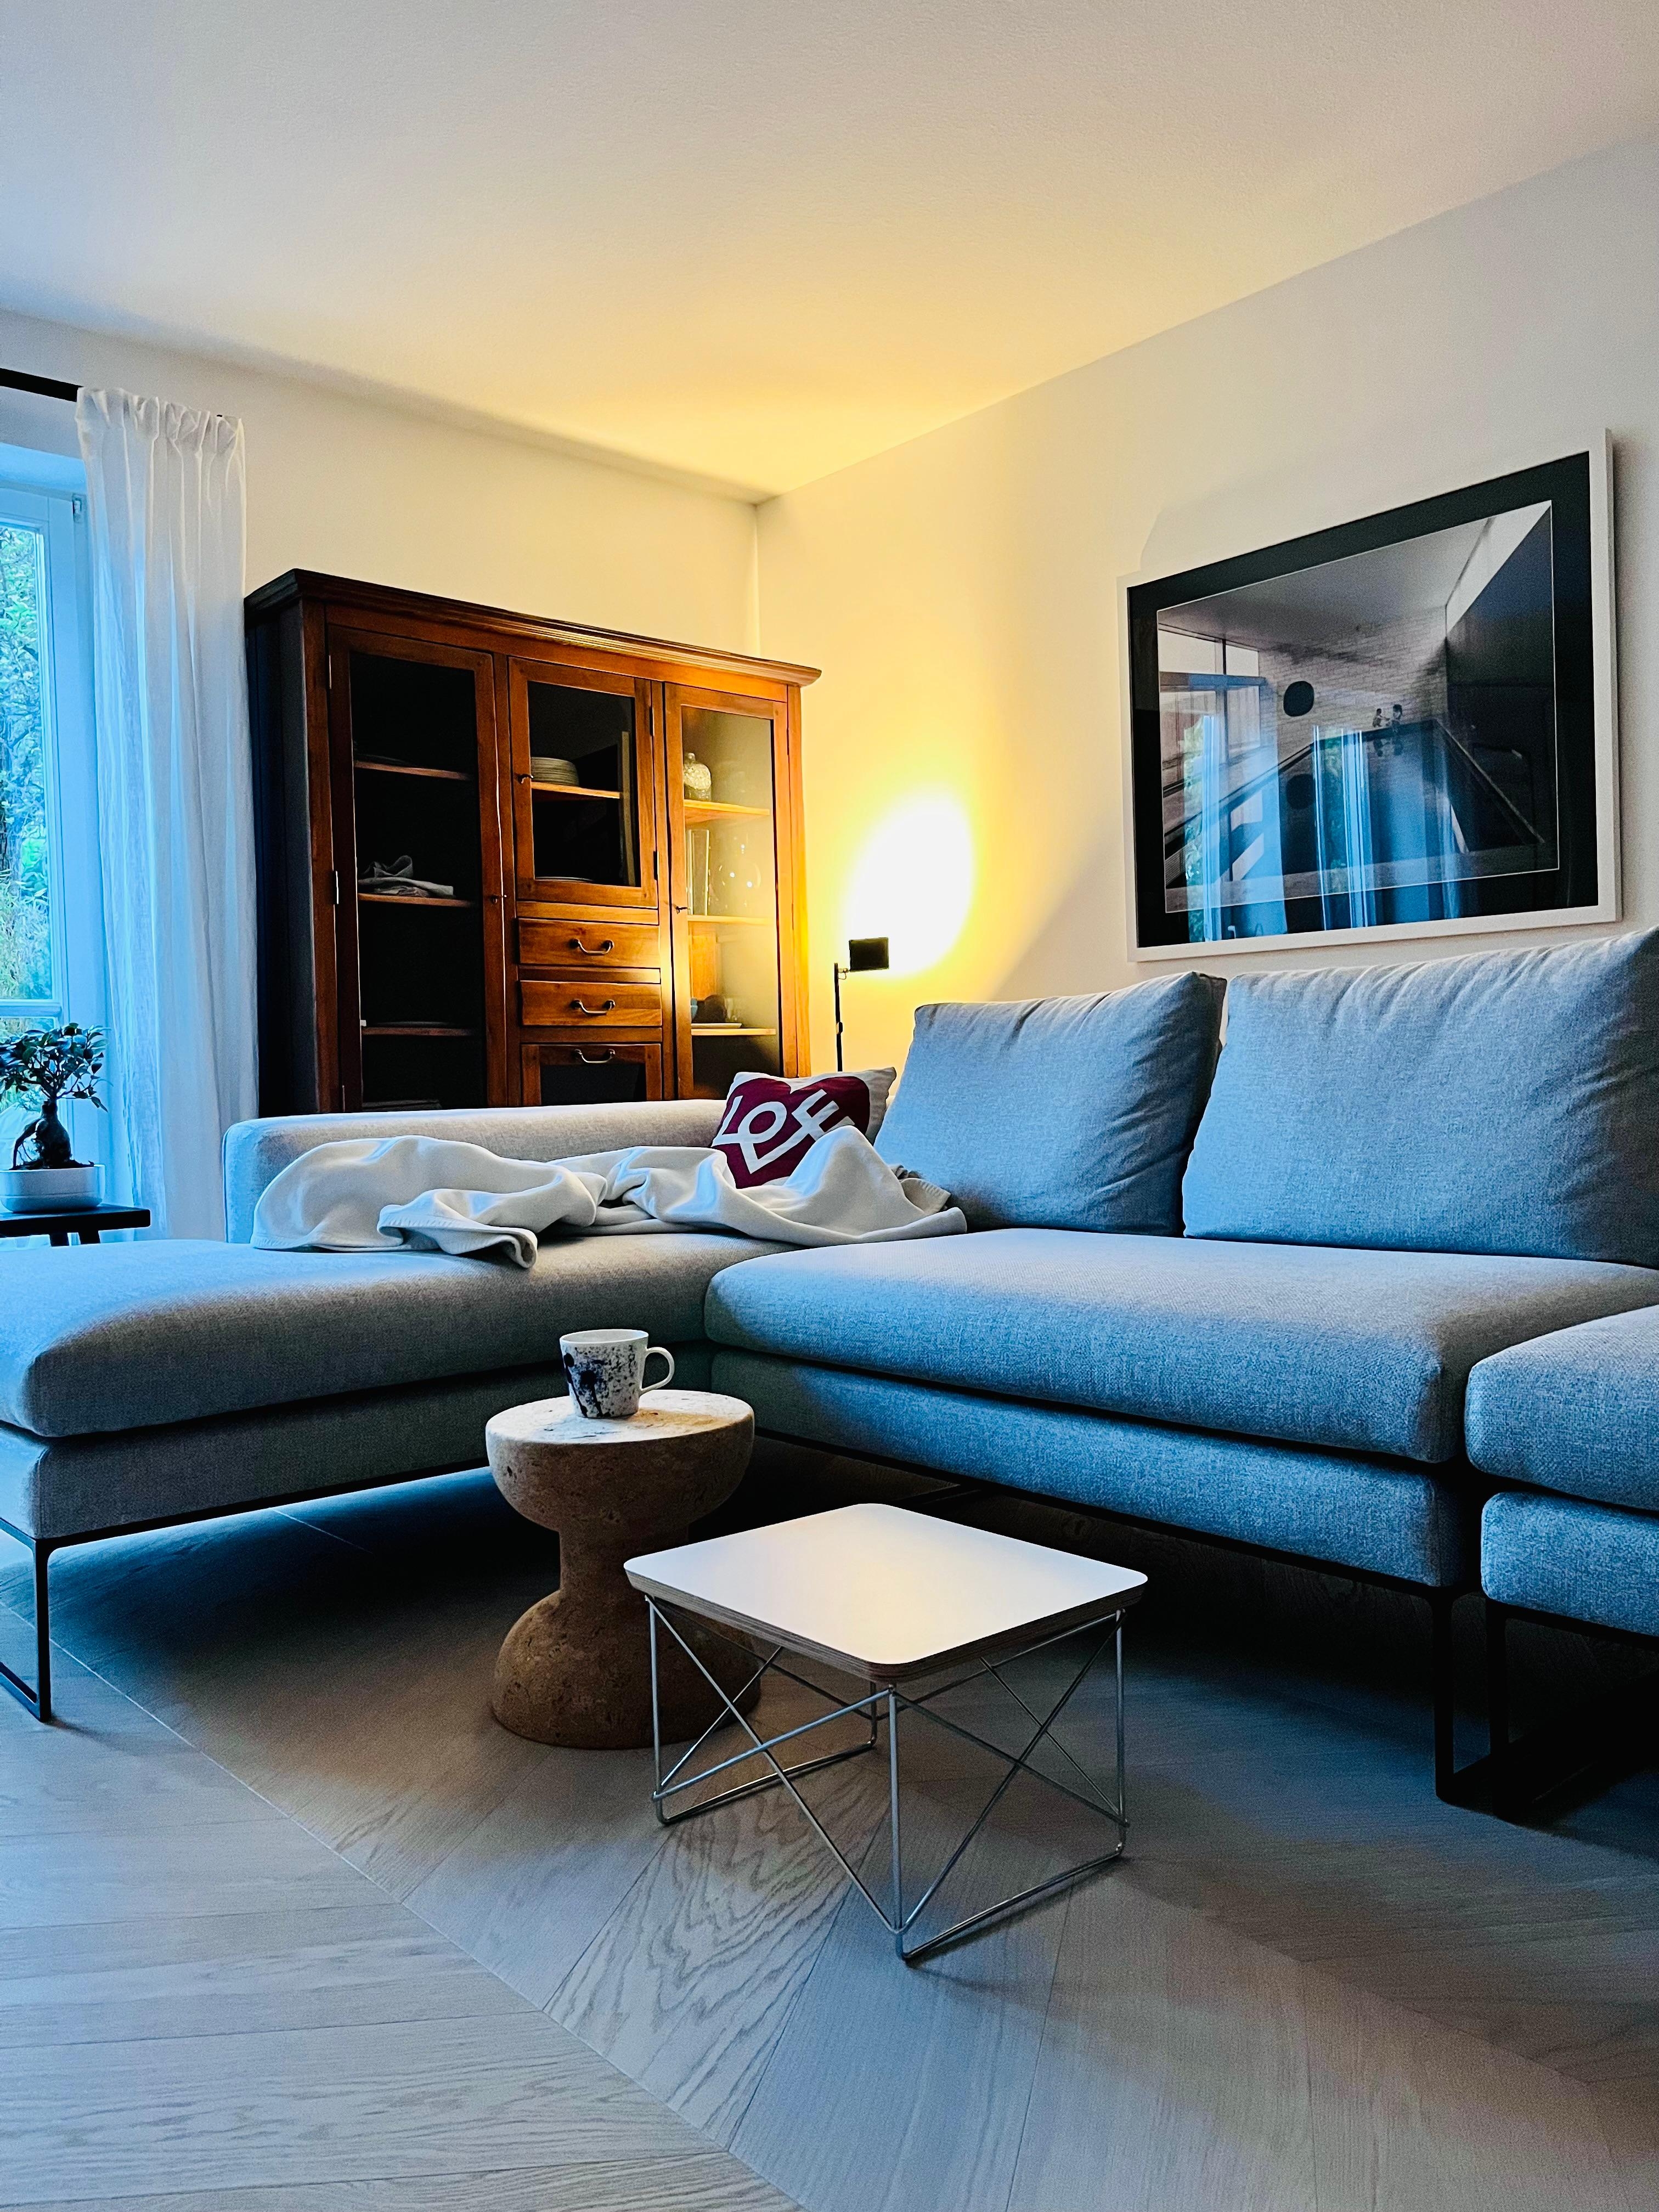 Nach 3 Monaten Wartezeit haben wir endlich unser neues #sofa 😊. #wohnzimmer #livingchallenge